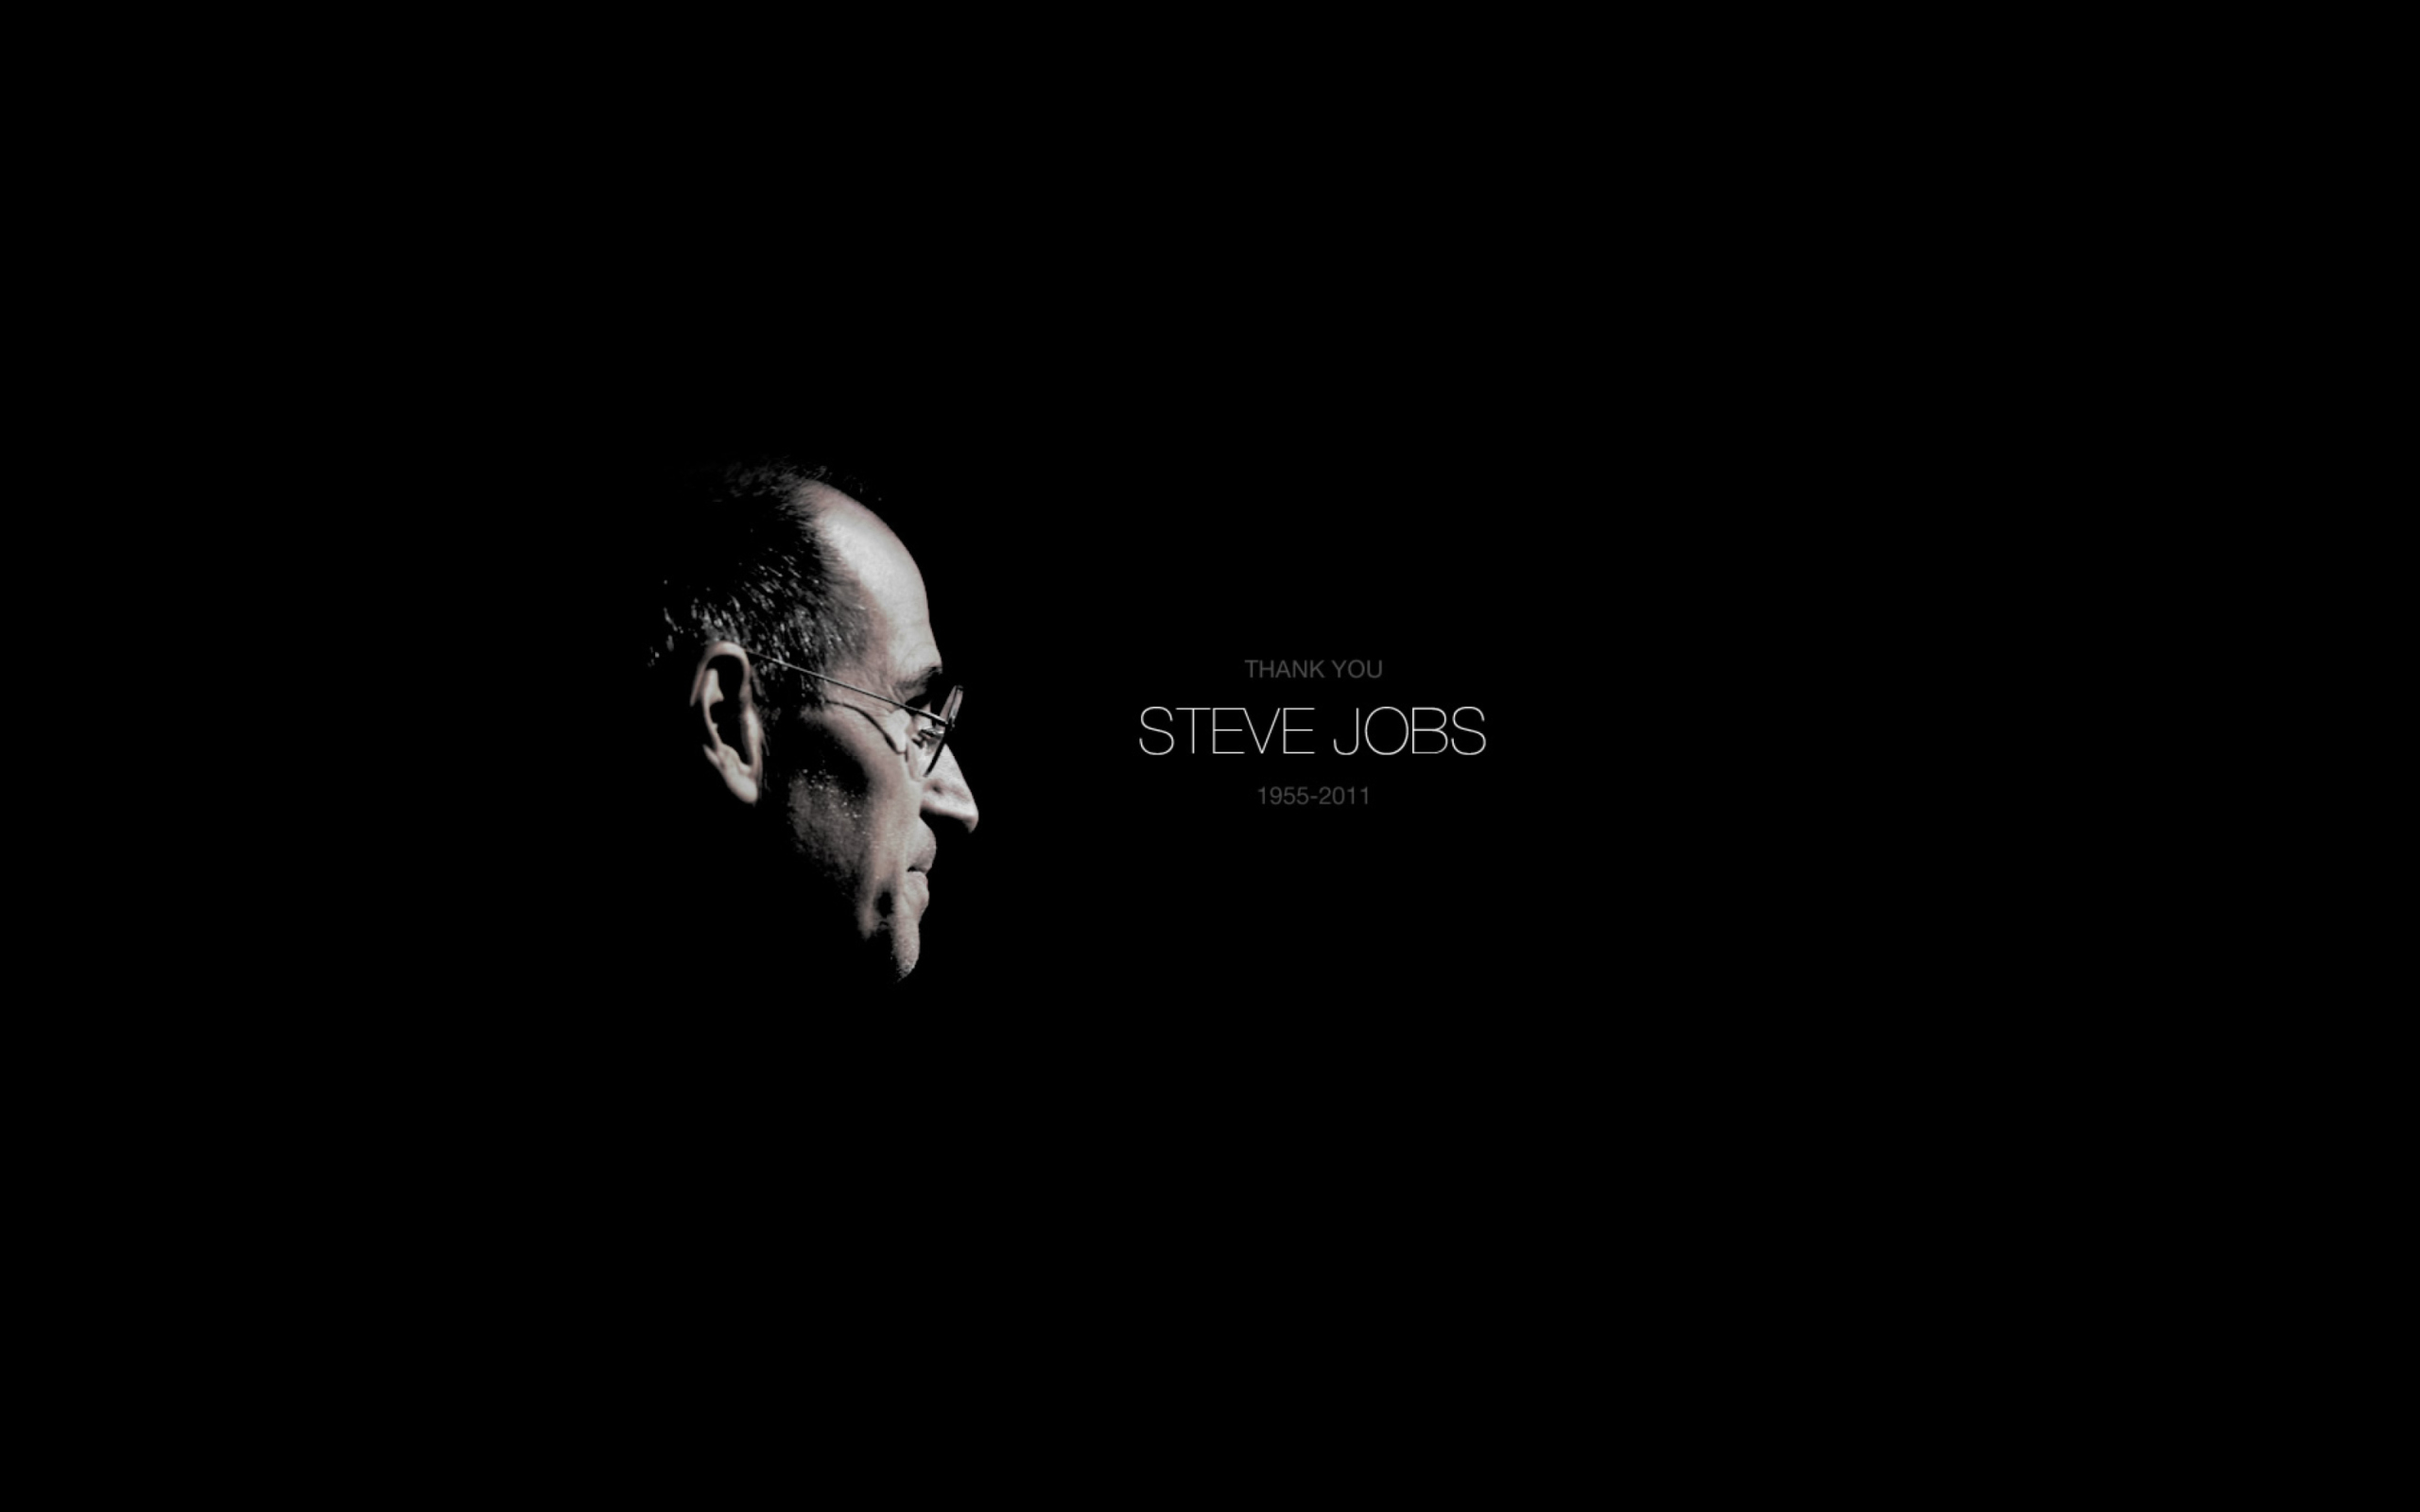 Thank you Steve Jobs wallpaper 2560x1600